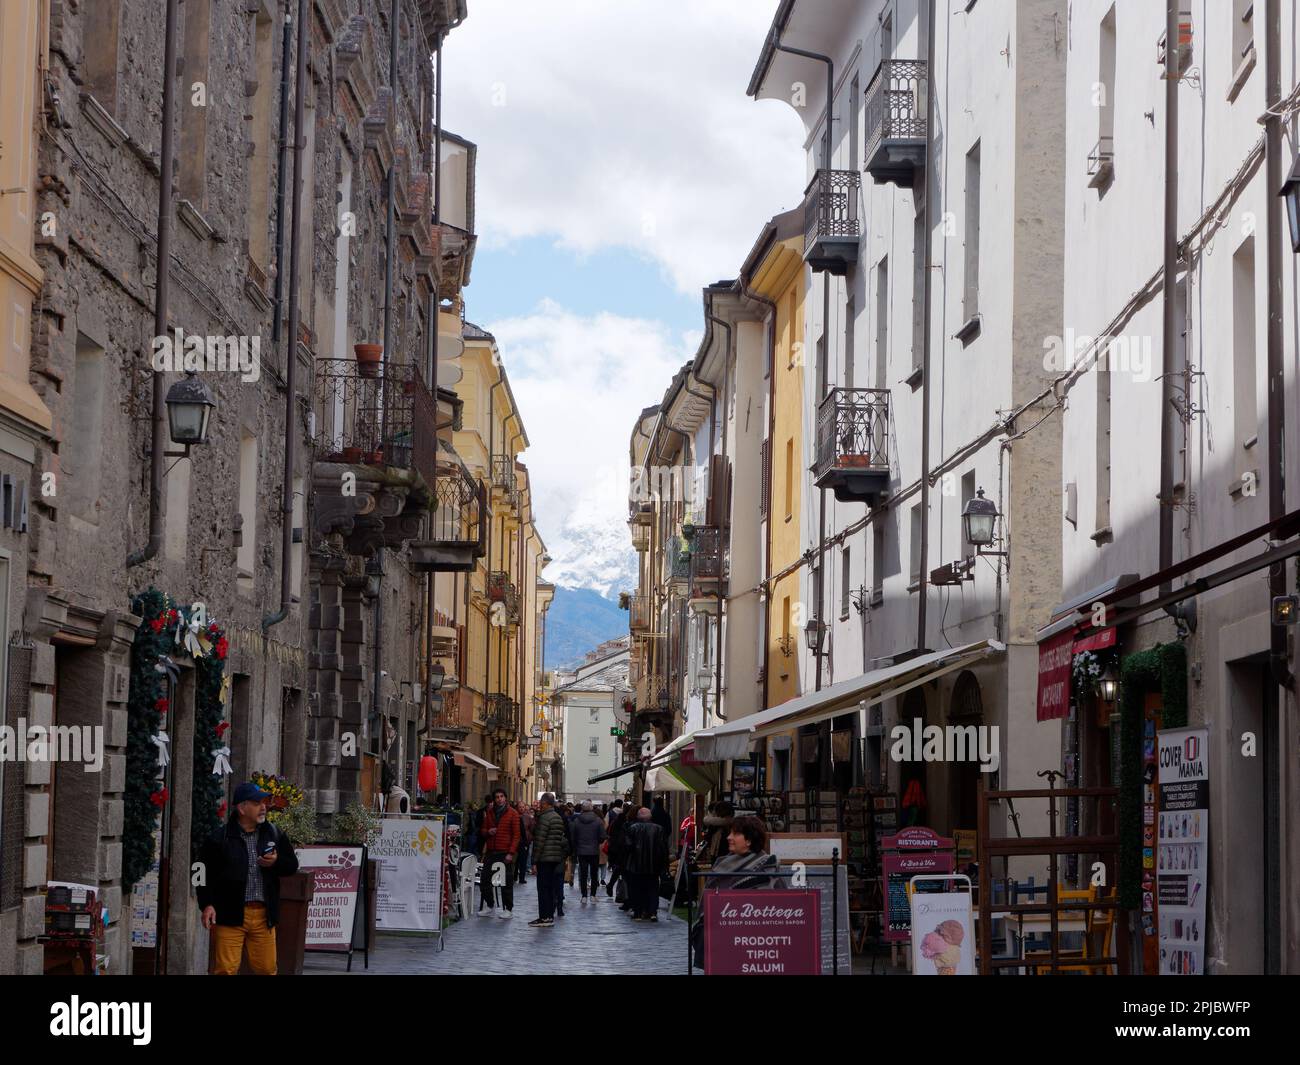 Strada affollata con negozi e bar nella città di Aosta, Valle d'Aosta Italia Foto Stock